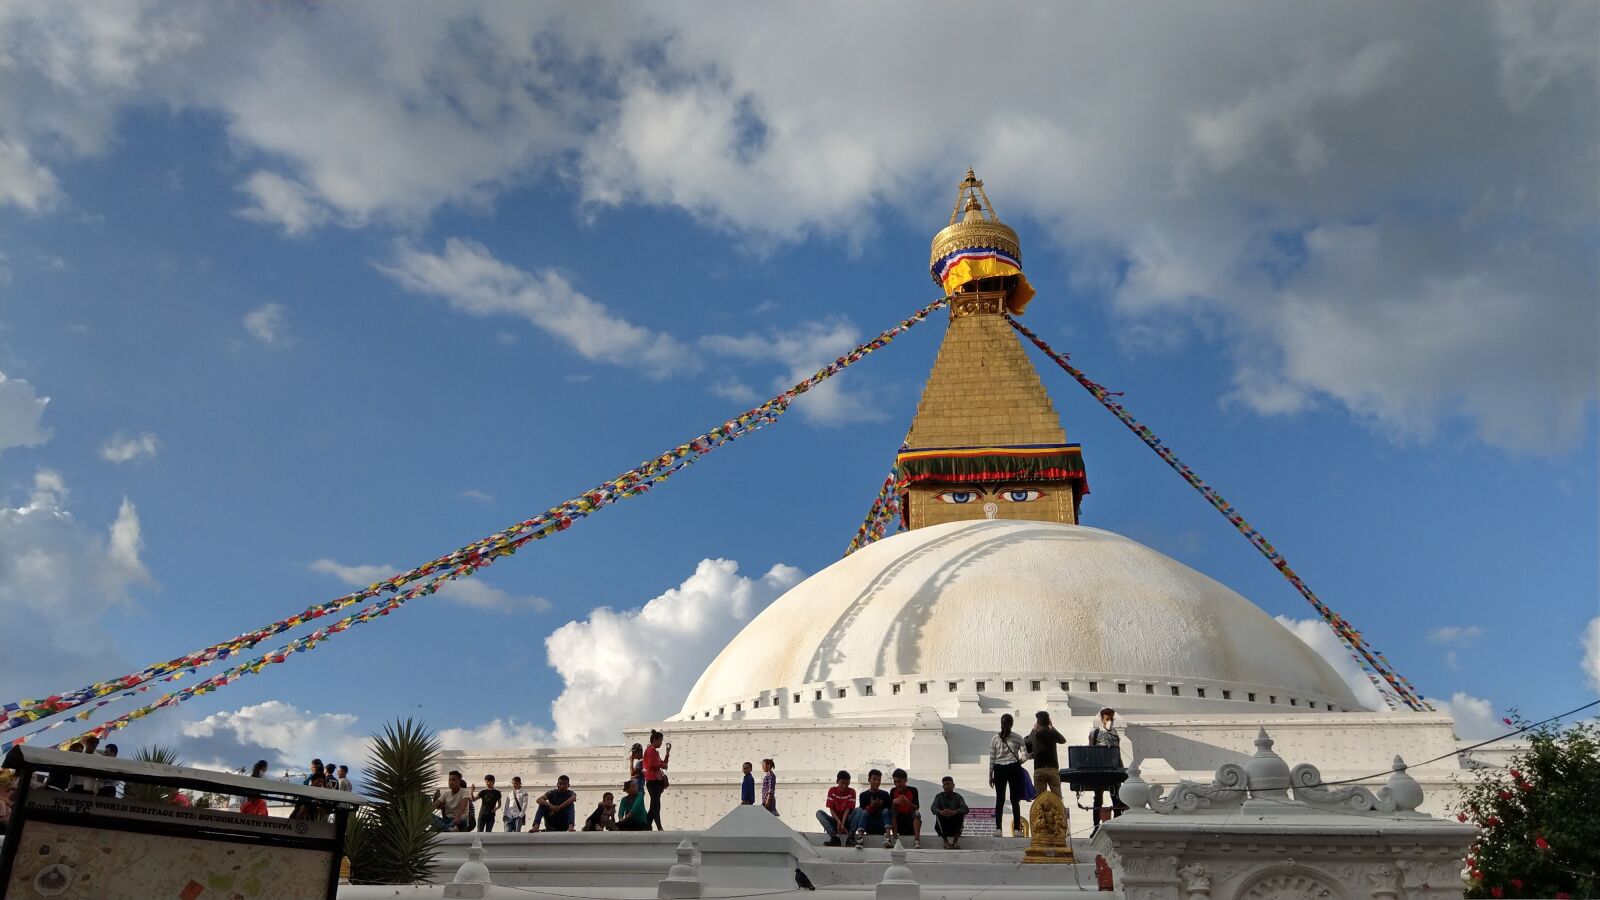 HTC U11 sample photo. Bodnath stupa, nepal, buddhism photography